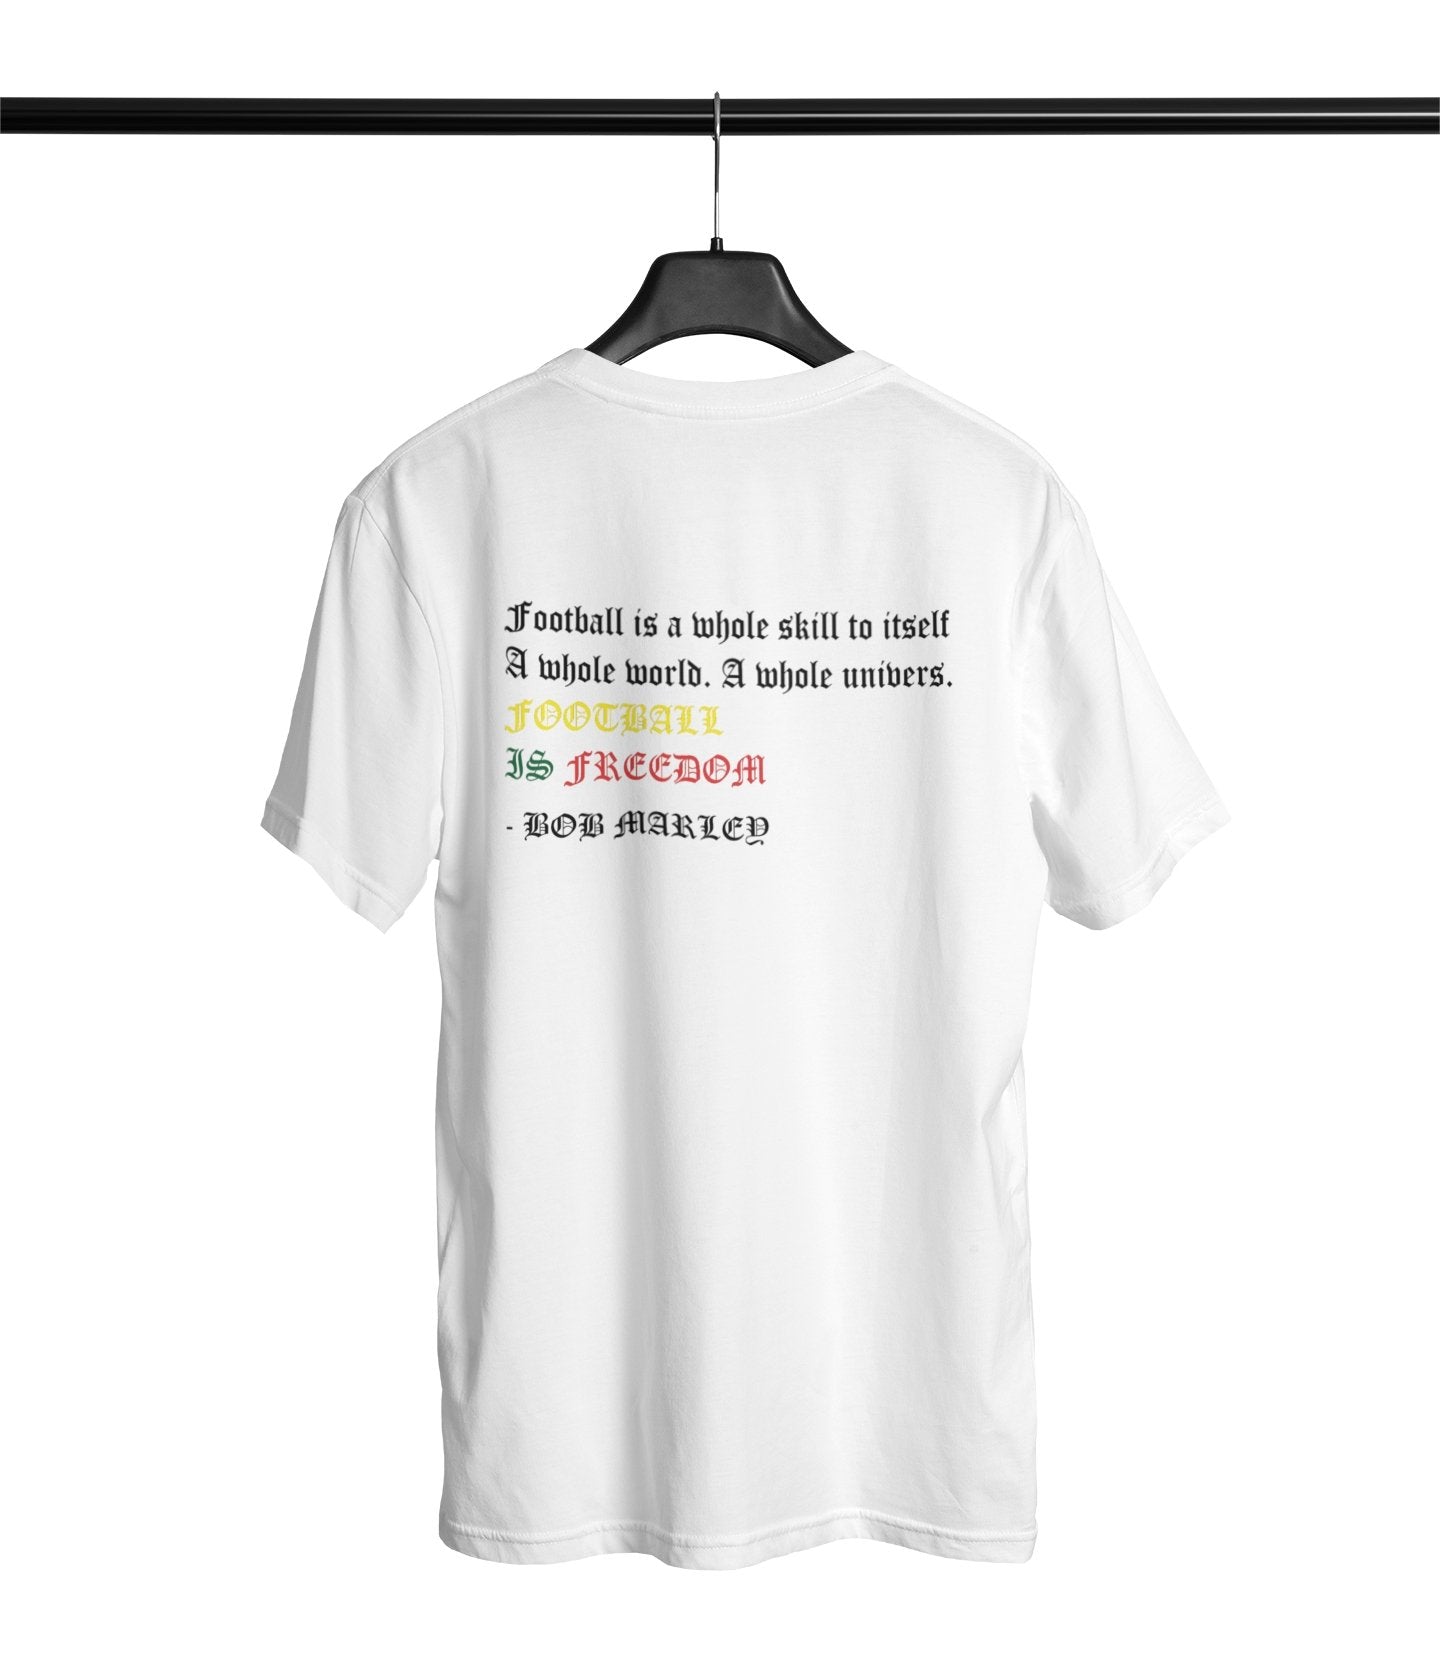 Bob Marley - Football is Freedom T-shirt